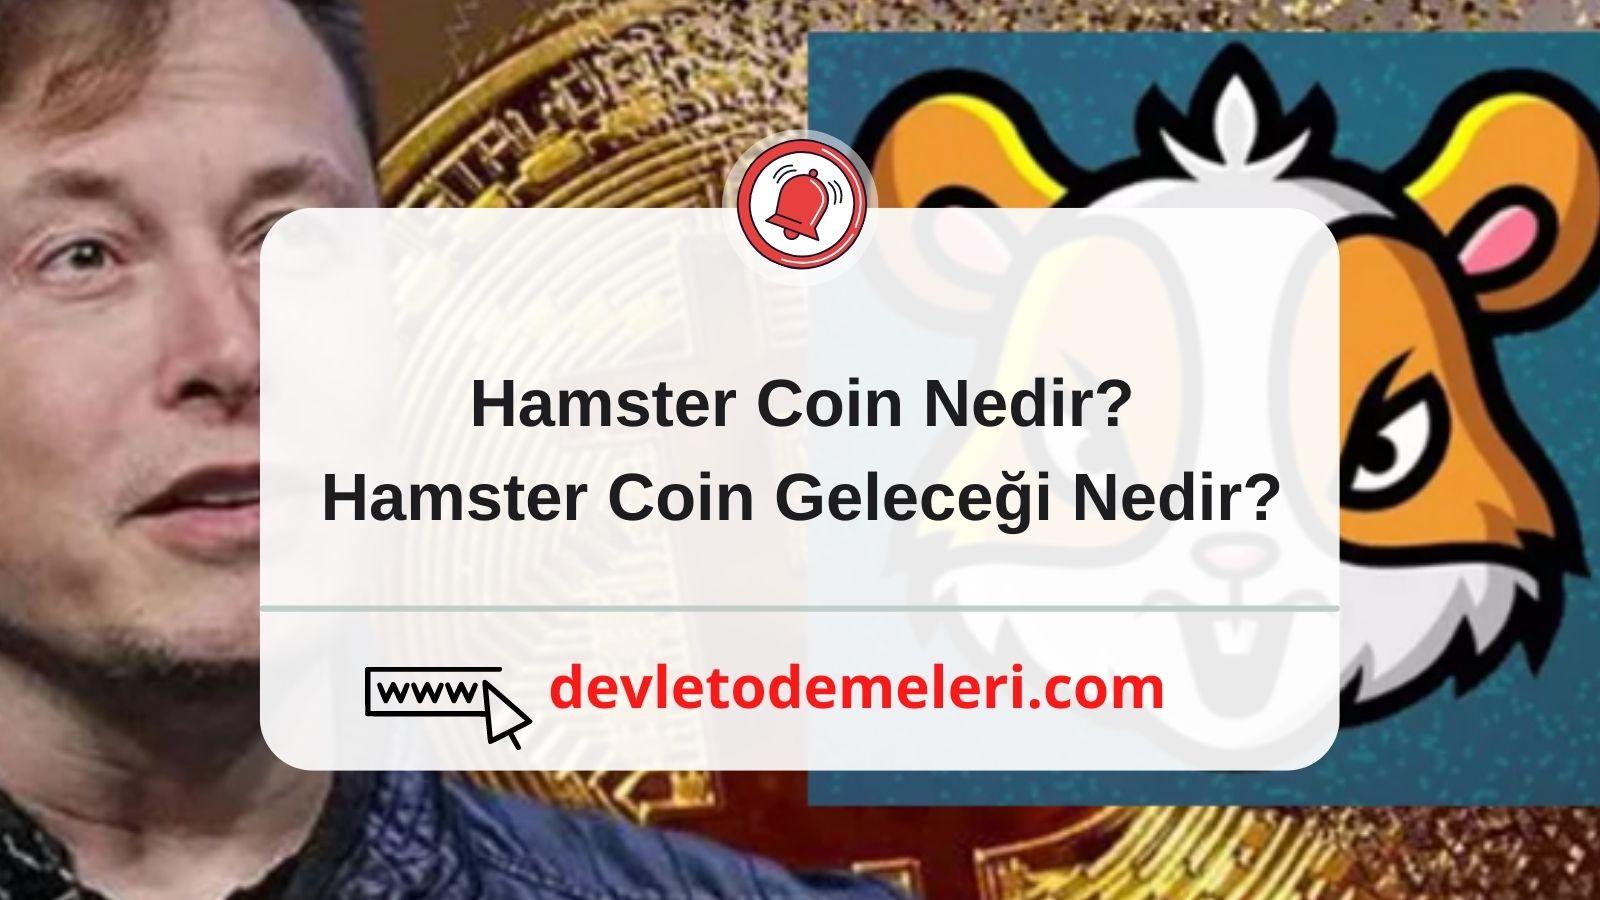 Hamster Coin Geleceği Nedir?